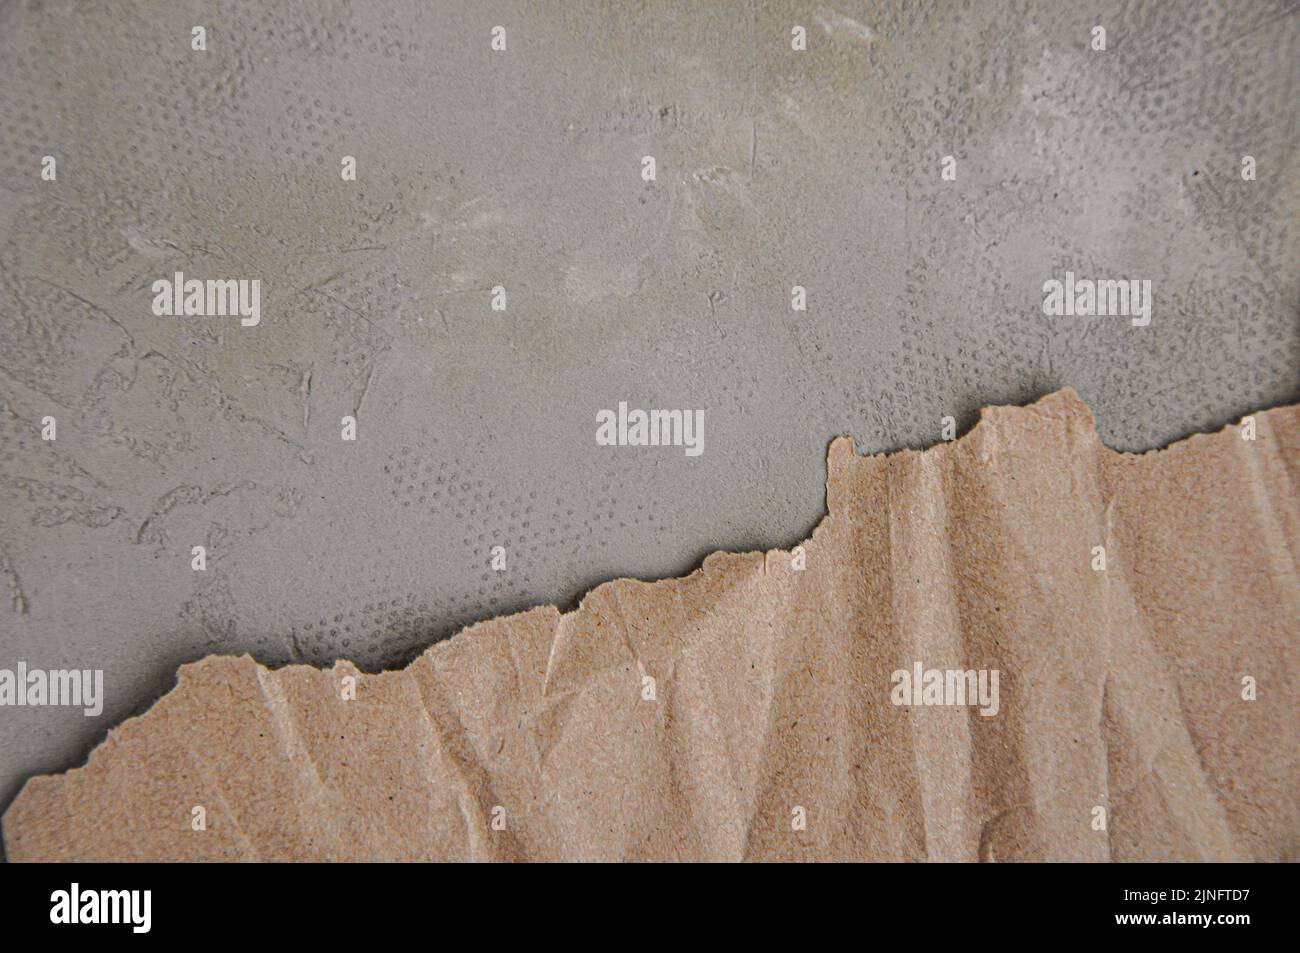 Papier brun froissé avec bords déchirés, fond gris, texture du papier artisanal Banque D'Images